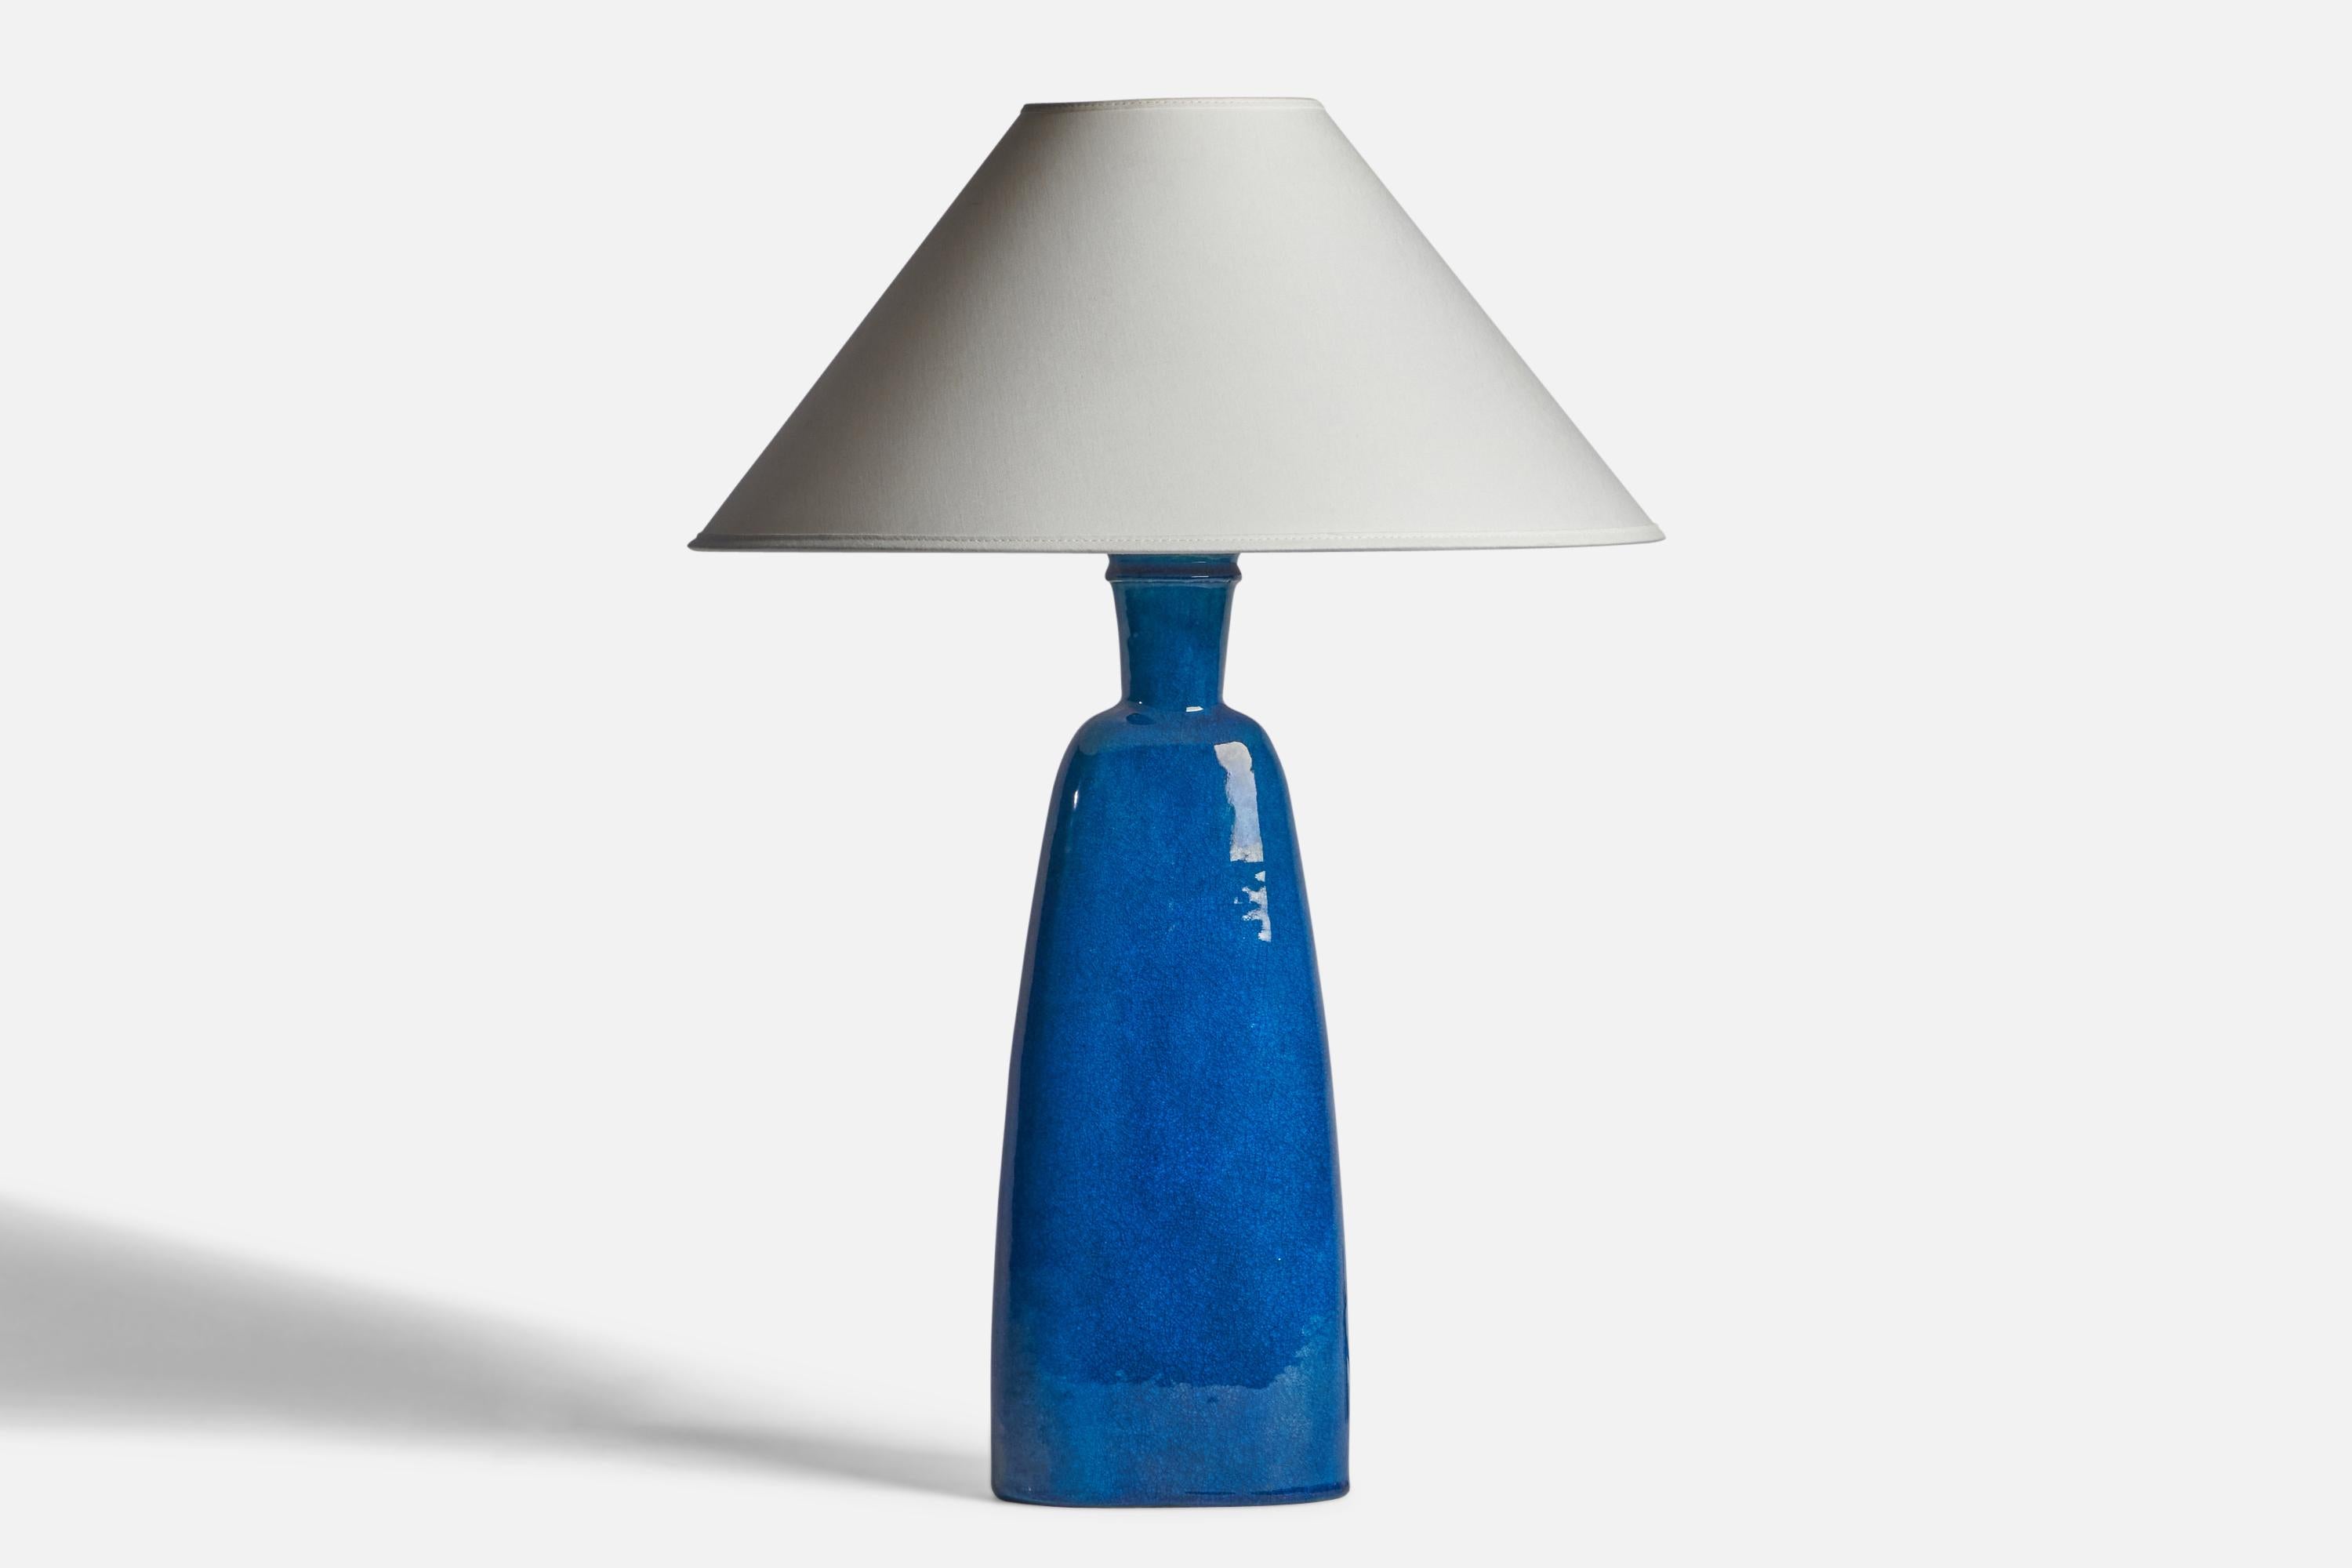 Große Tischlampe aus blau glasierter Keramik, entworfen und hergestellt von Nils Kähler, Dänemark, ca. 1950er Jahre.

Abmessungen der Lampe (Zoll): 18,25